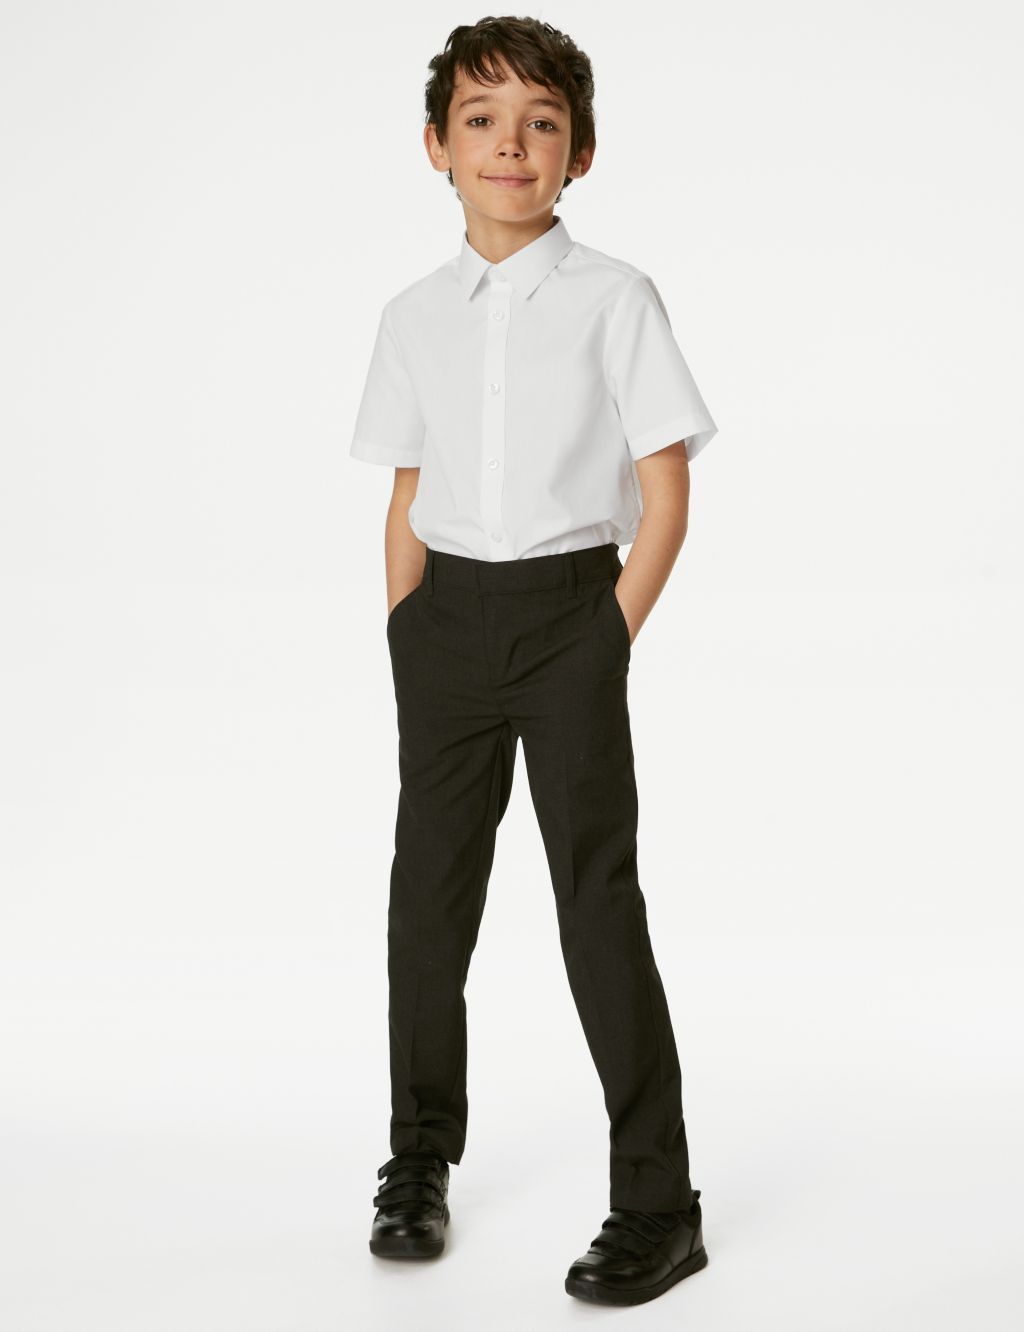 Plus-Fit School Uniform | M&S